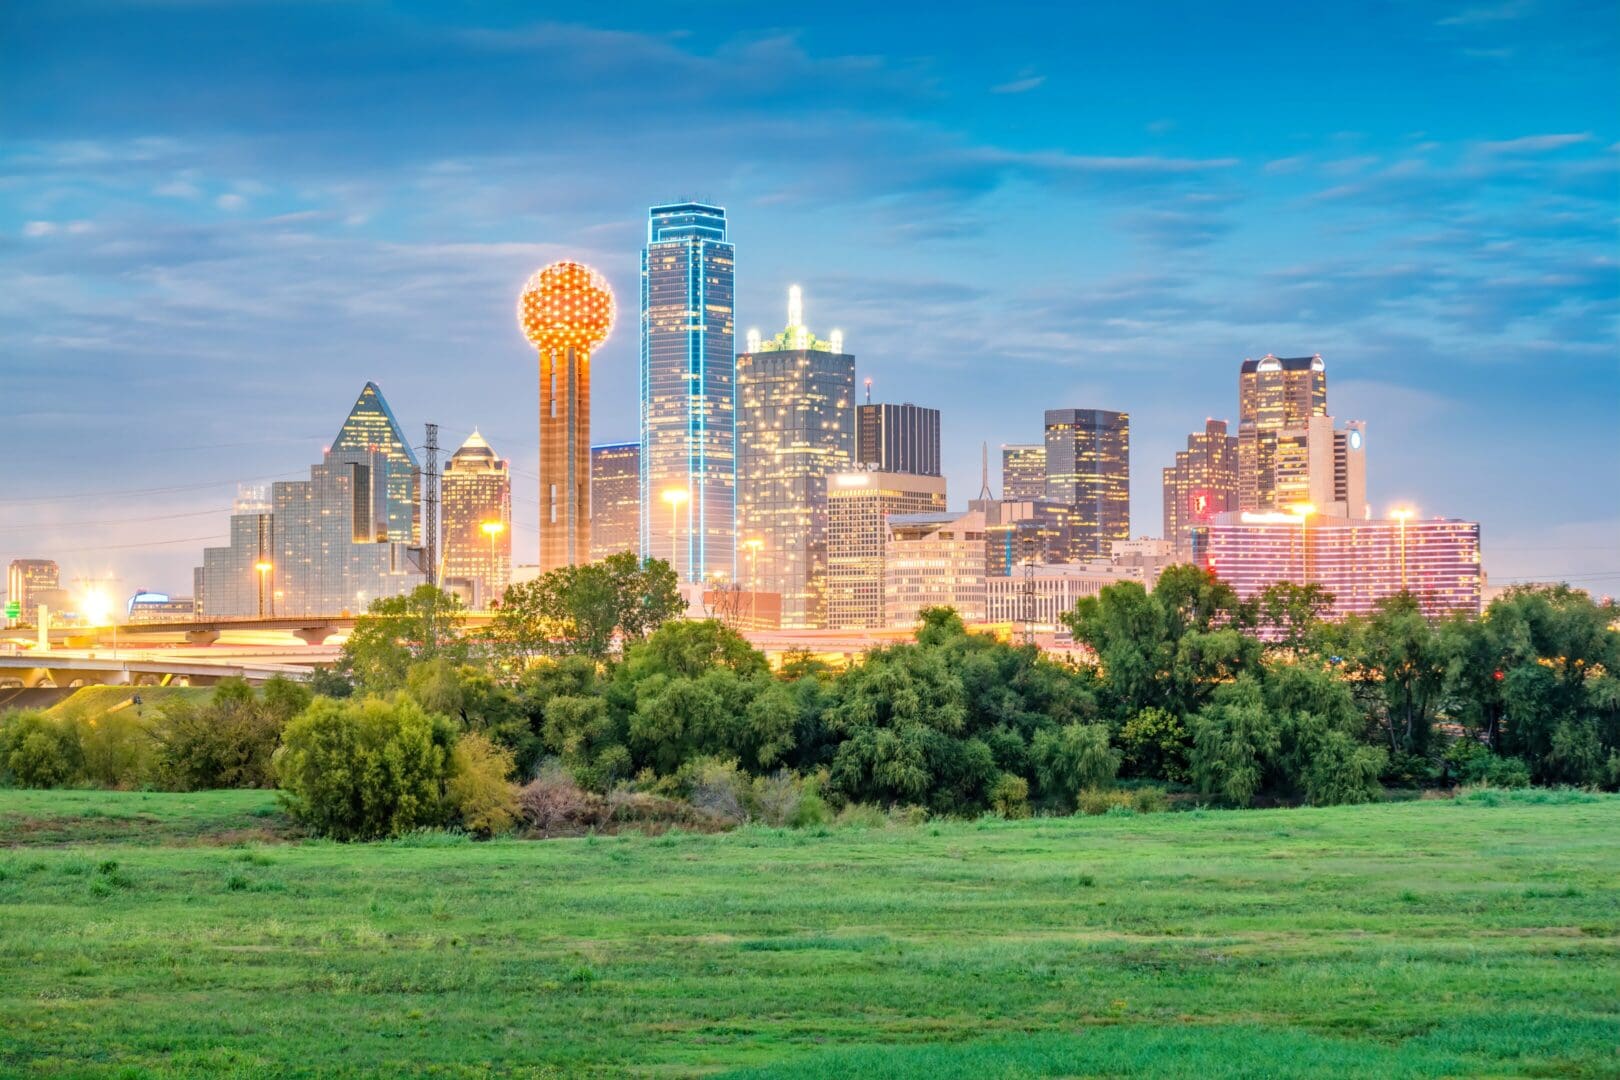 Picture of the city Dallas